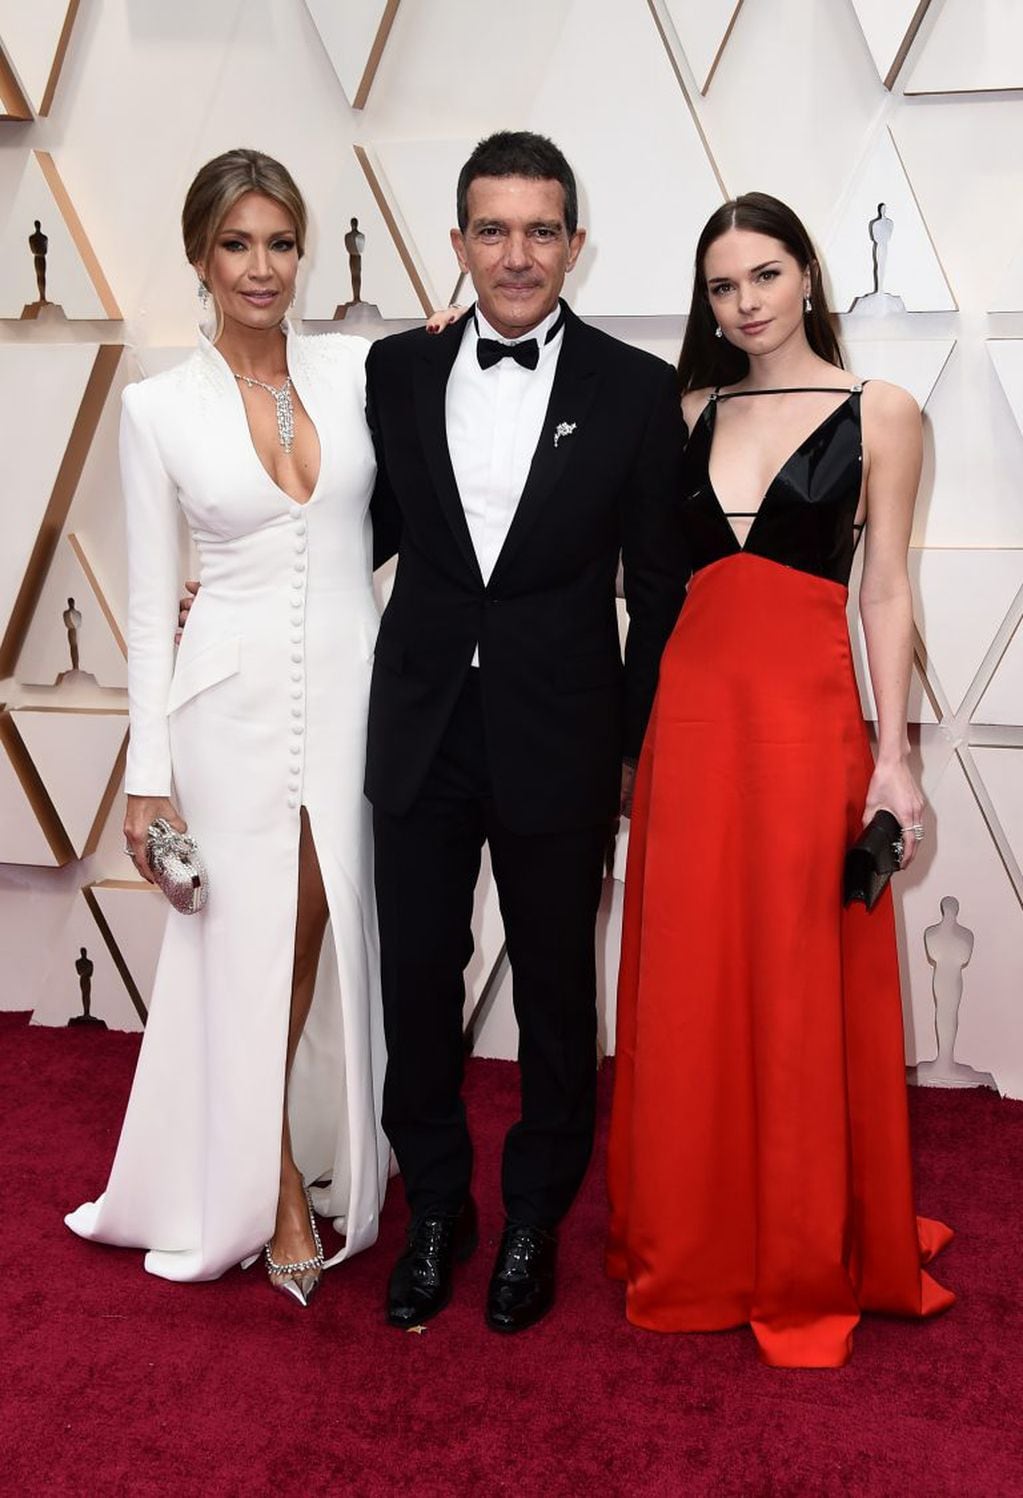 Antonio Banderas, nominado a Mejor Actor por 'Dolor y gloria', junto a su pareja, Nicole Kimpel, y su hija, Stella Banderas. (Foto: EFE)